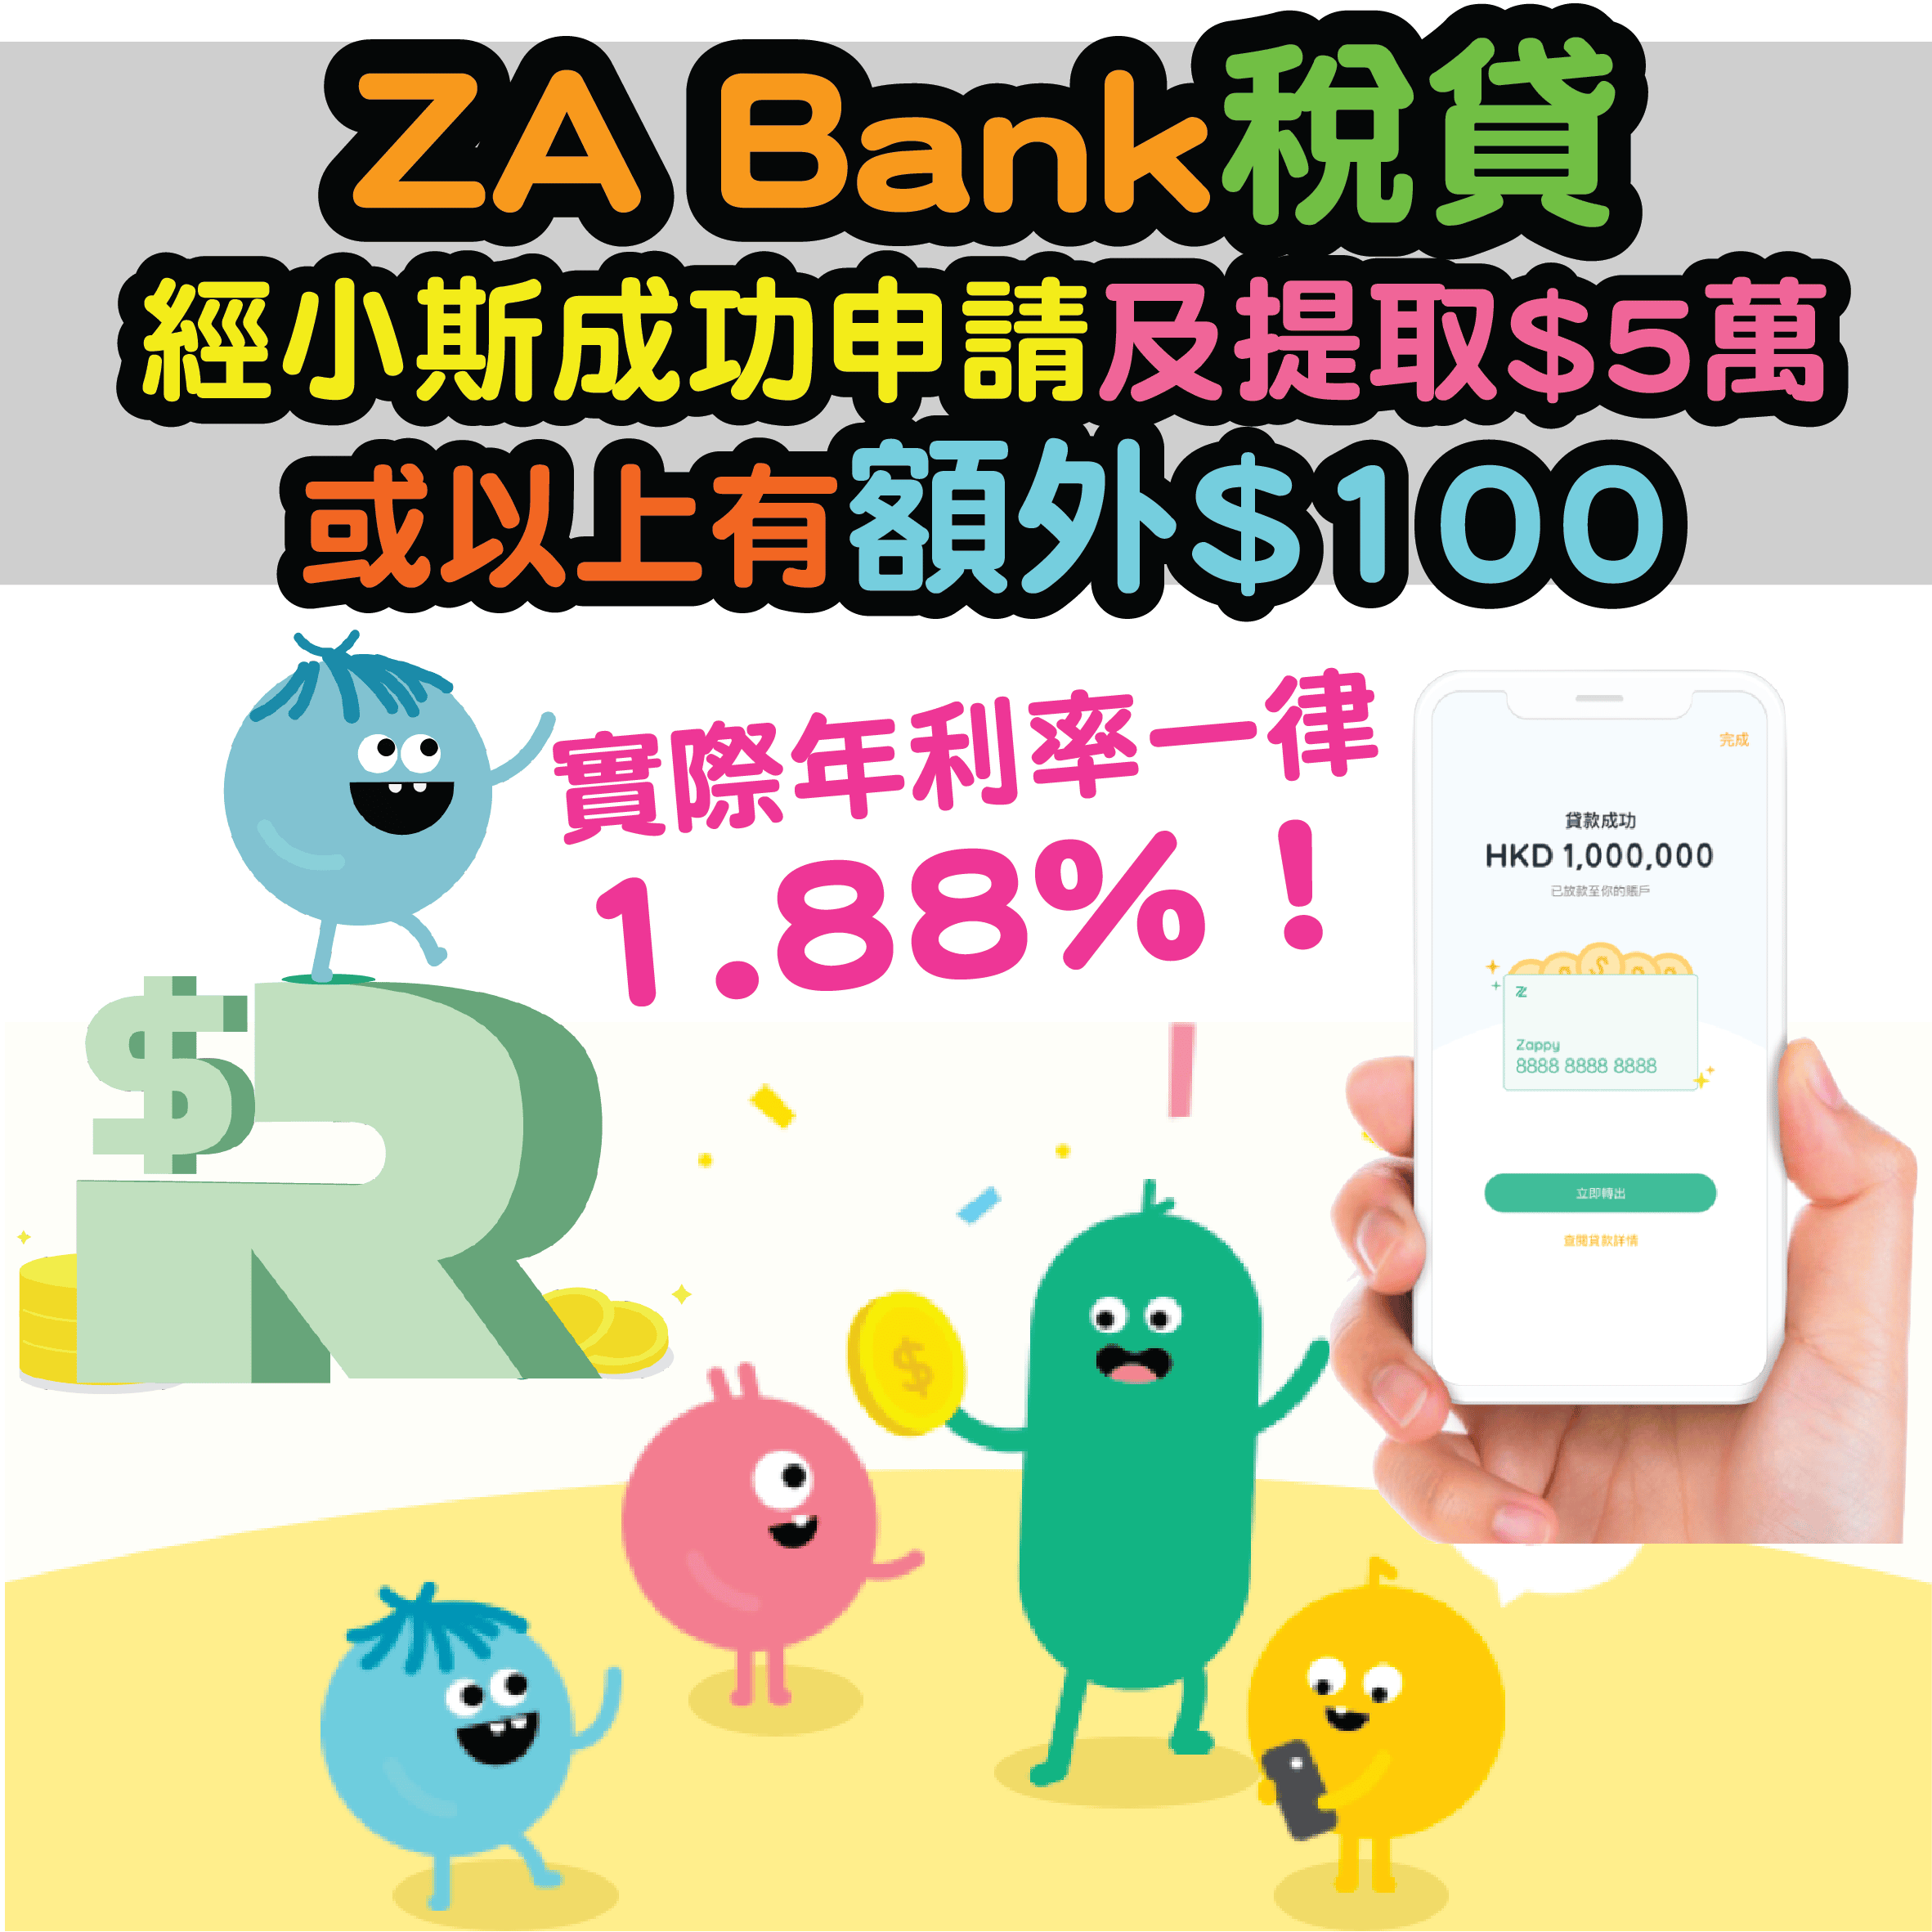 【ZA Bank低息稅貸】(經小斯申請實際年利率保證1.58%1！) 仲有額外$400！ 24/7全天候審批！